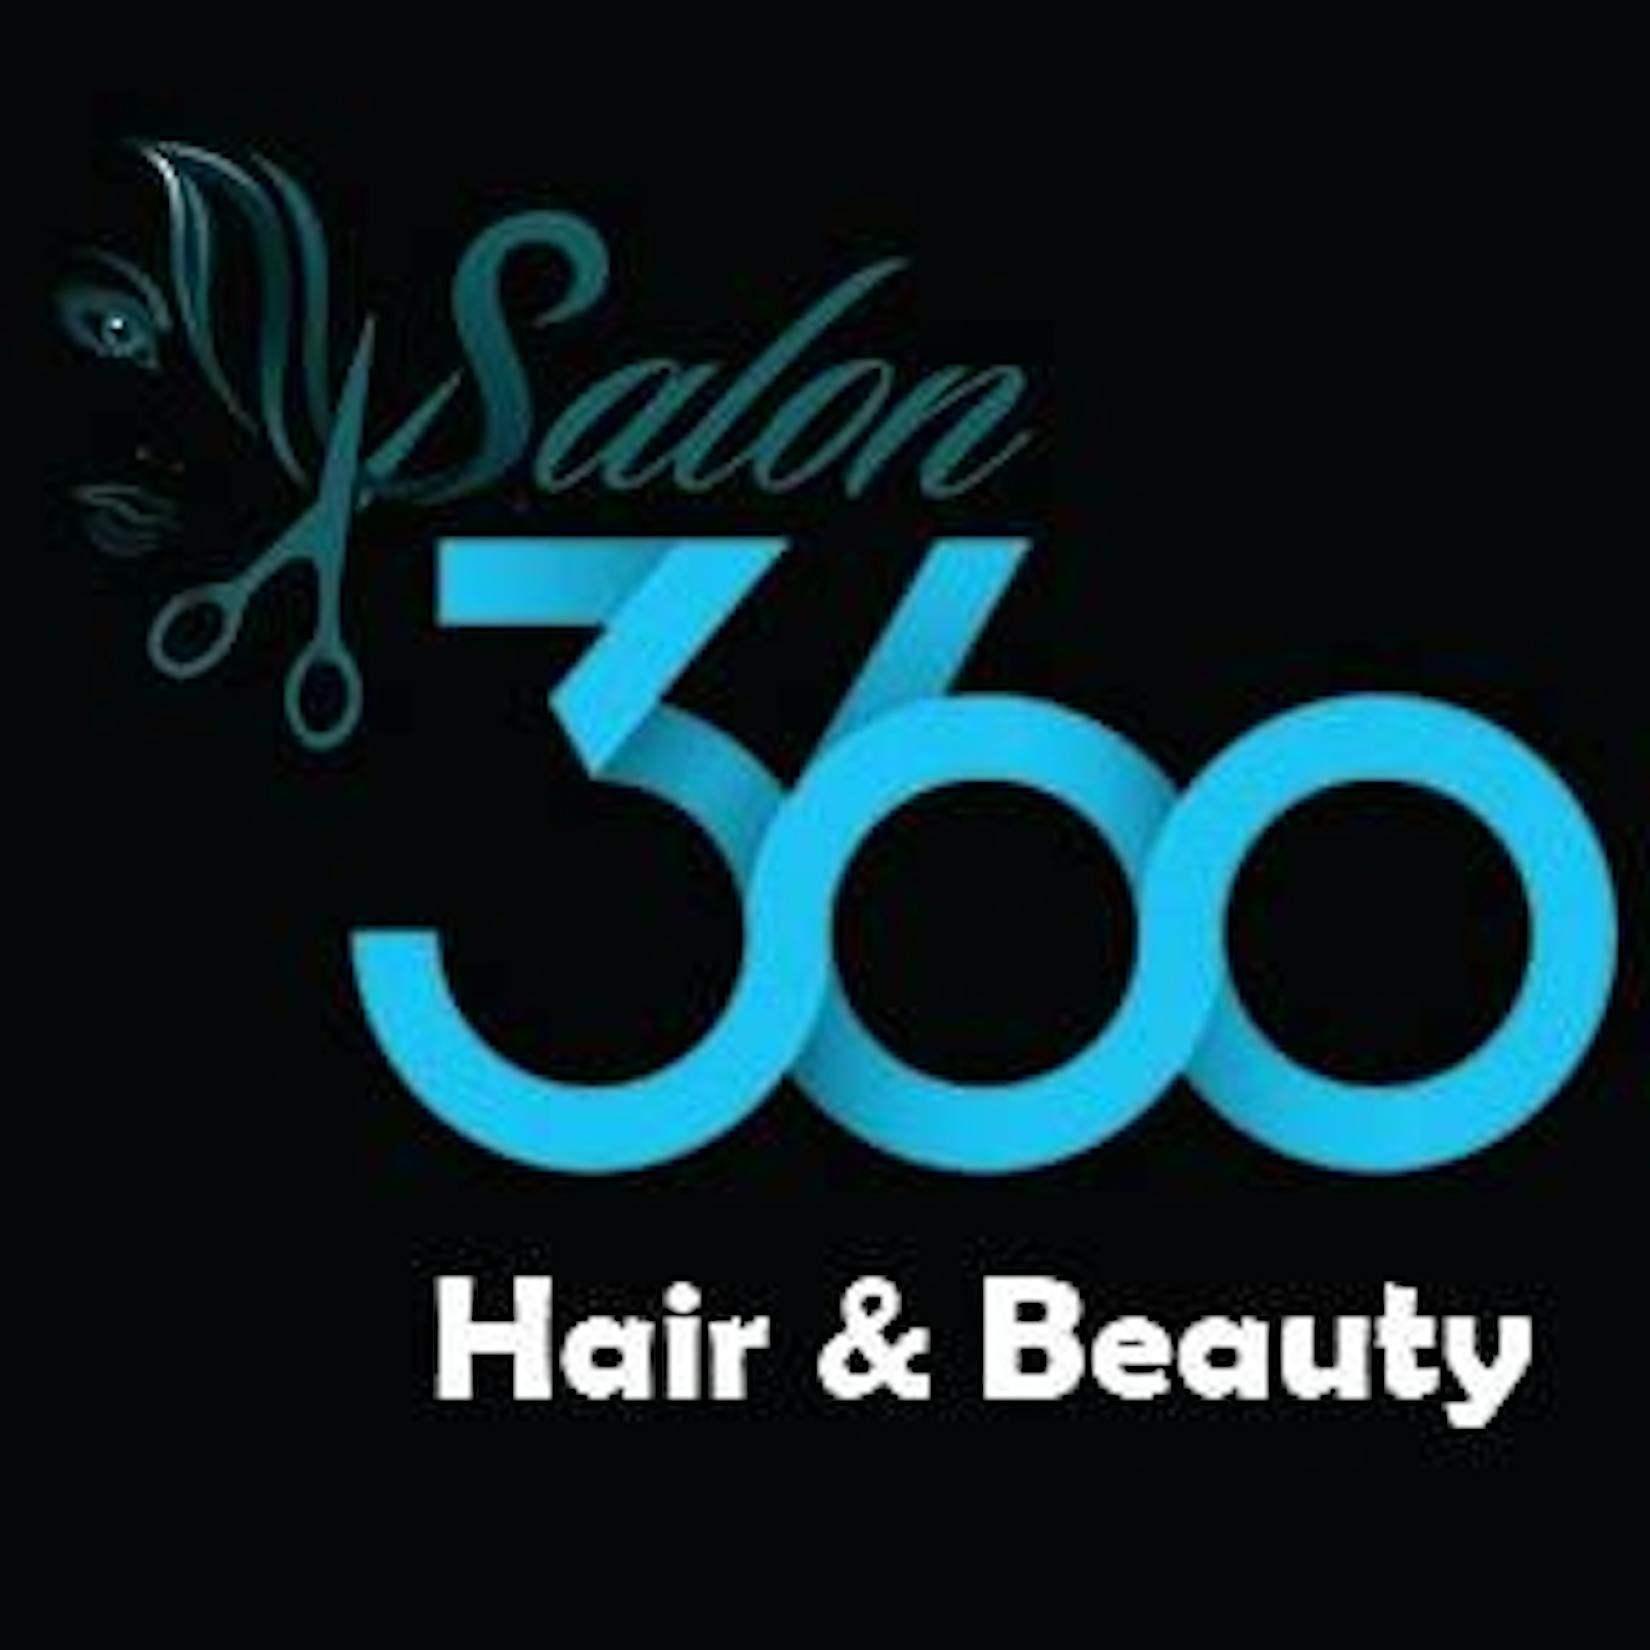 360 Hair & Beauty Salon | Beauty